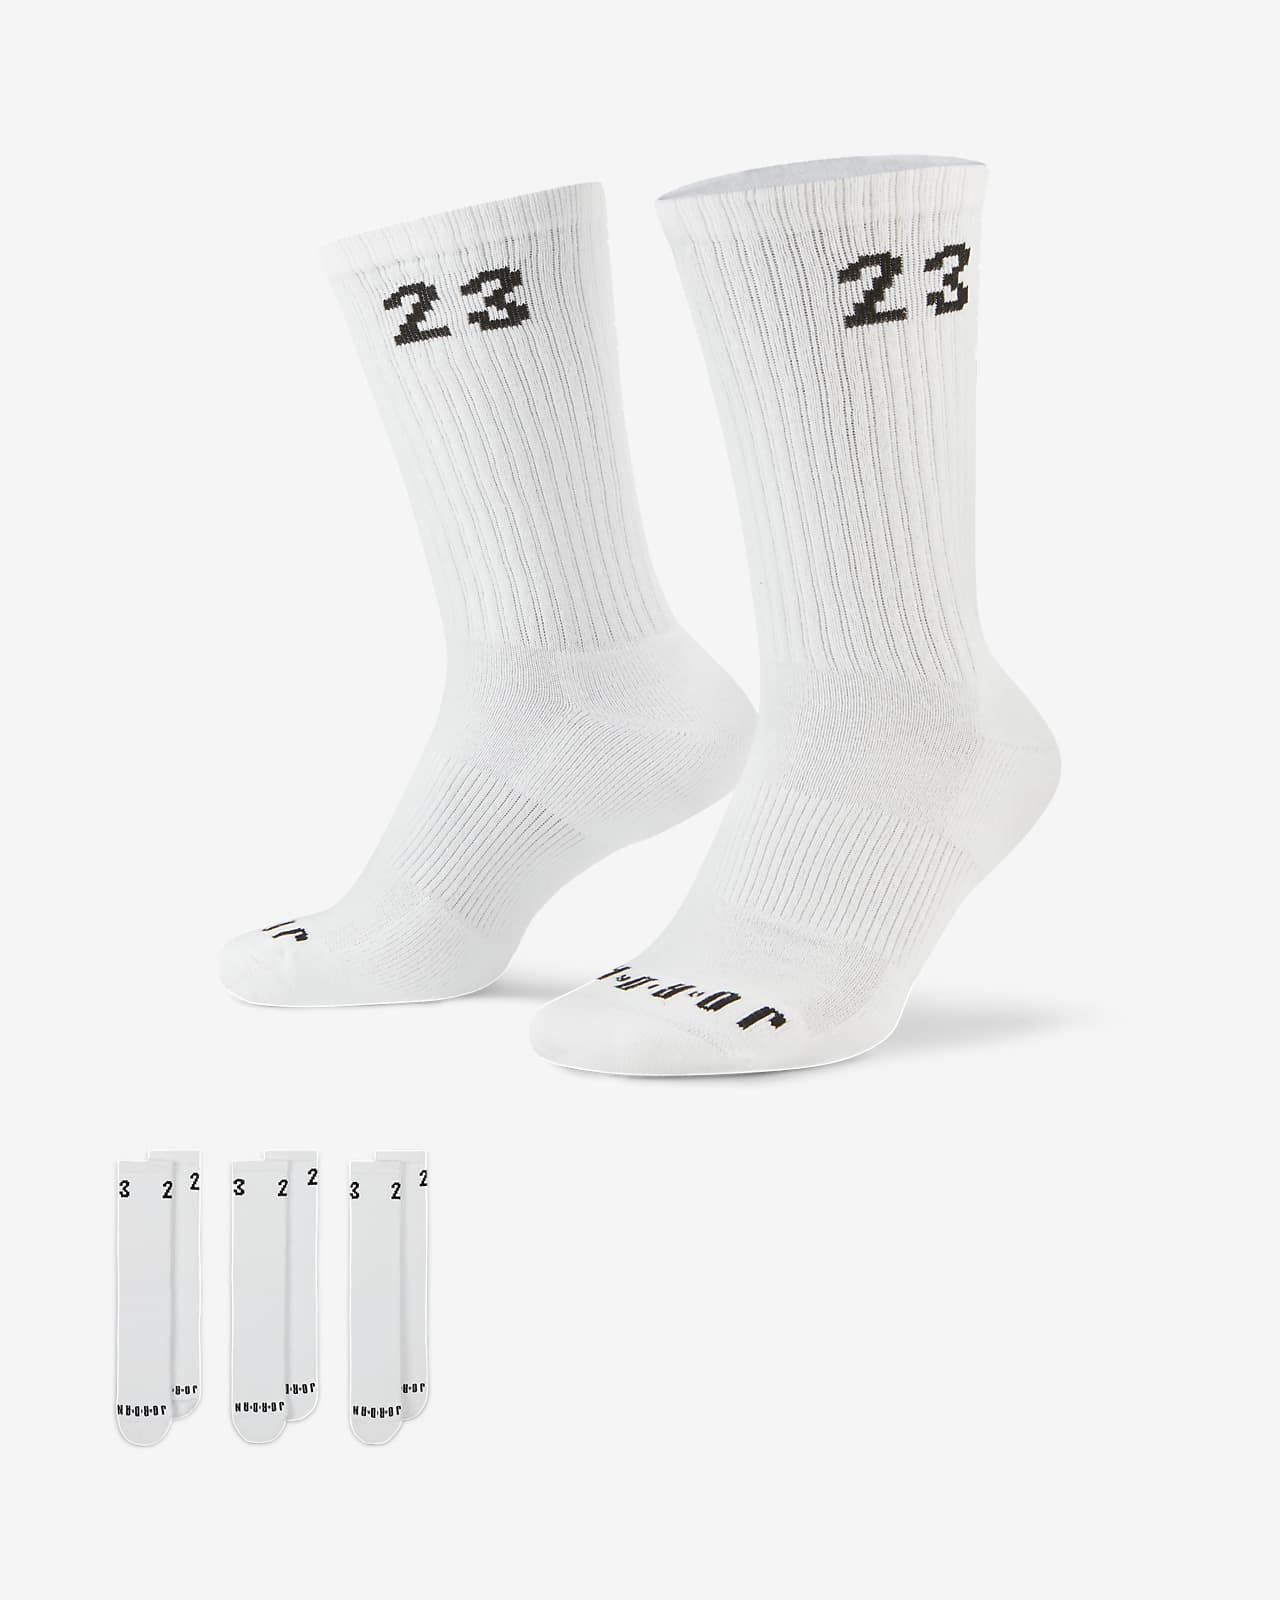 Vista Aislante Lavandería a monedas Calcetas Jordan Essentials (3 pares). Nike MX